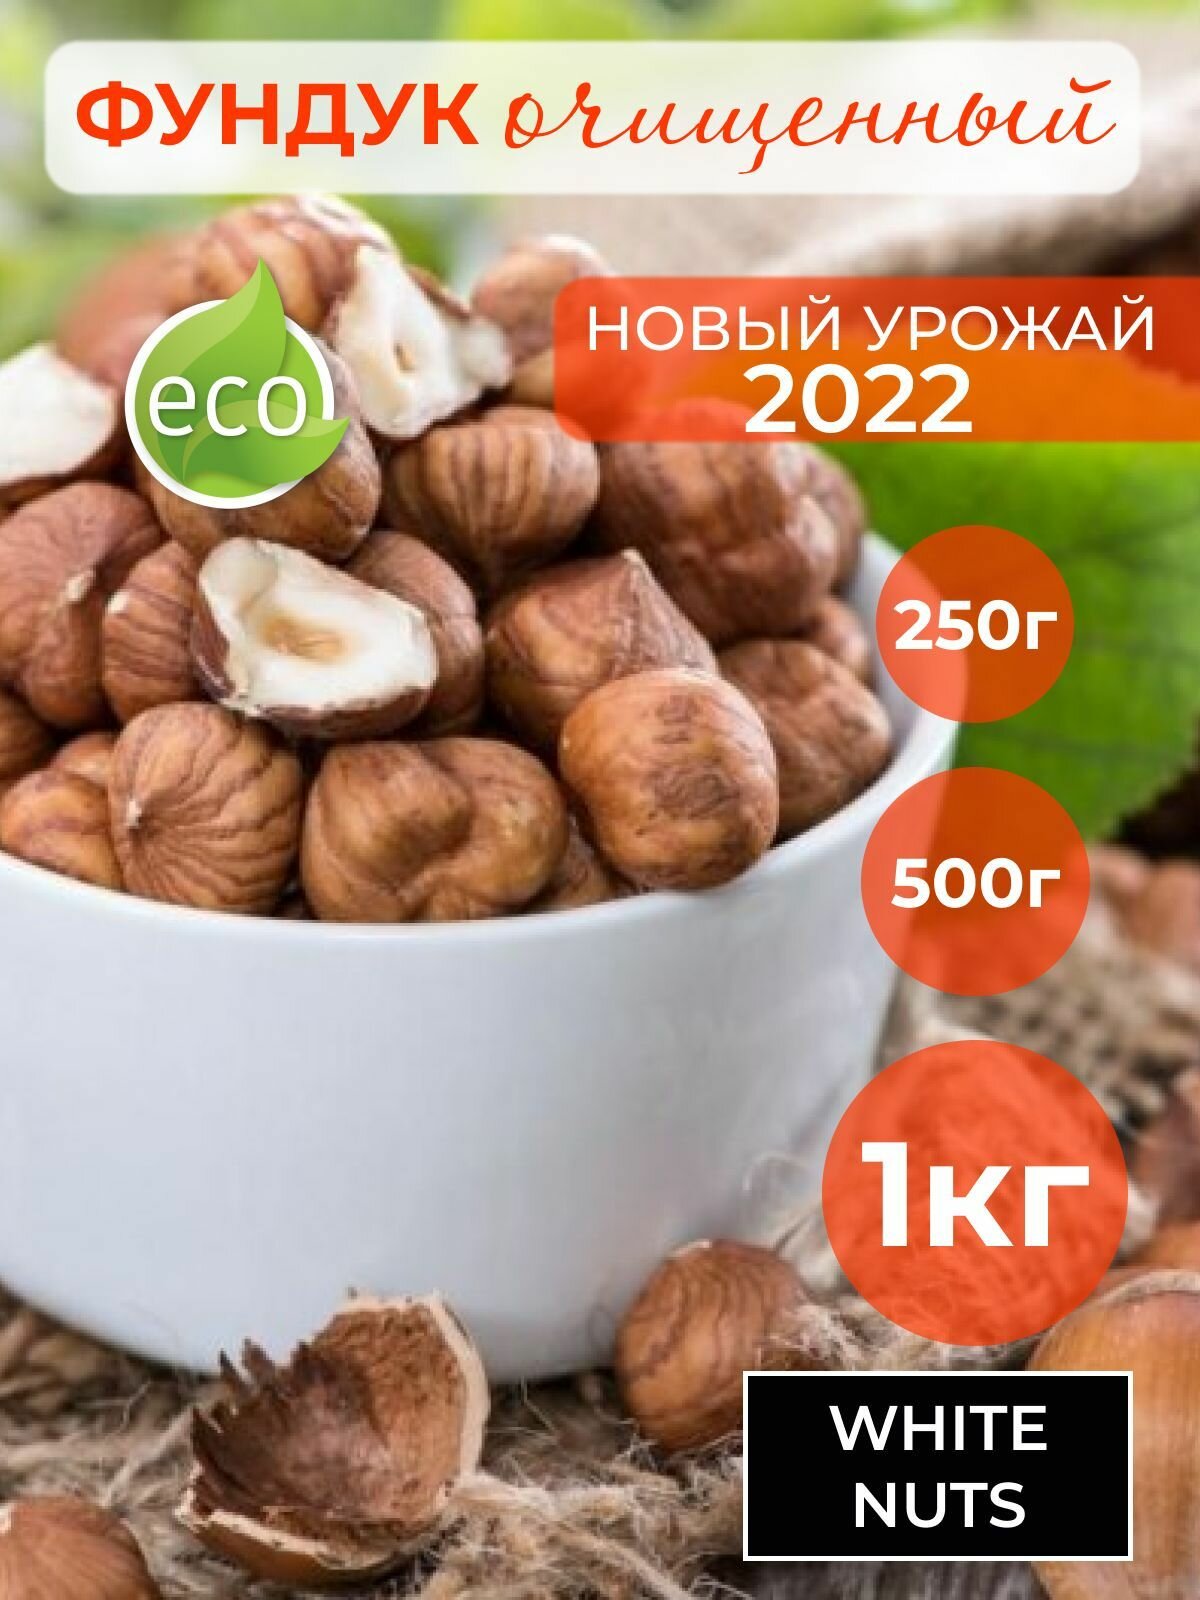 Фундук очищенный 250 гр урожай 2022г крупные орехи